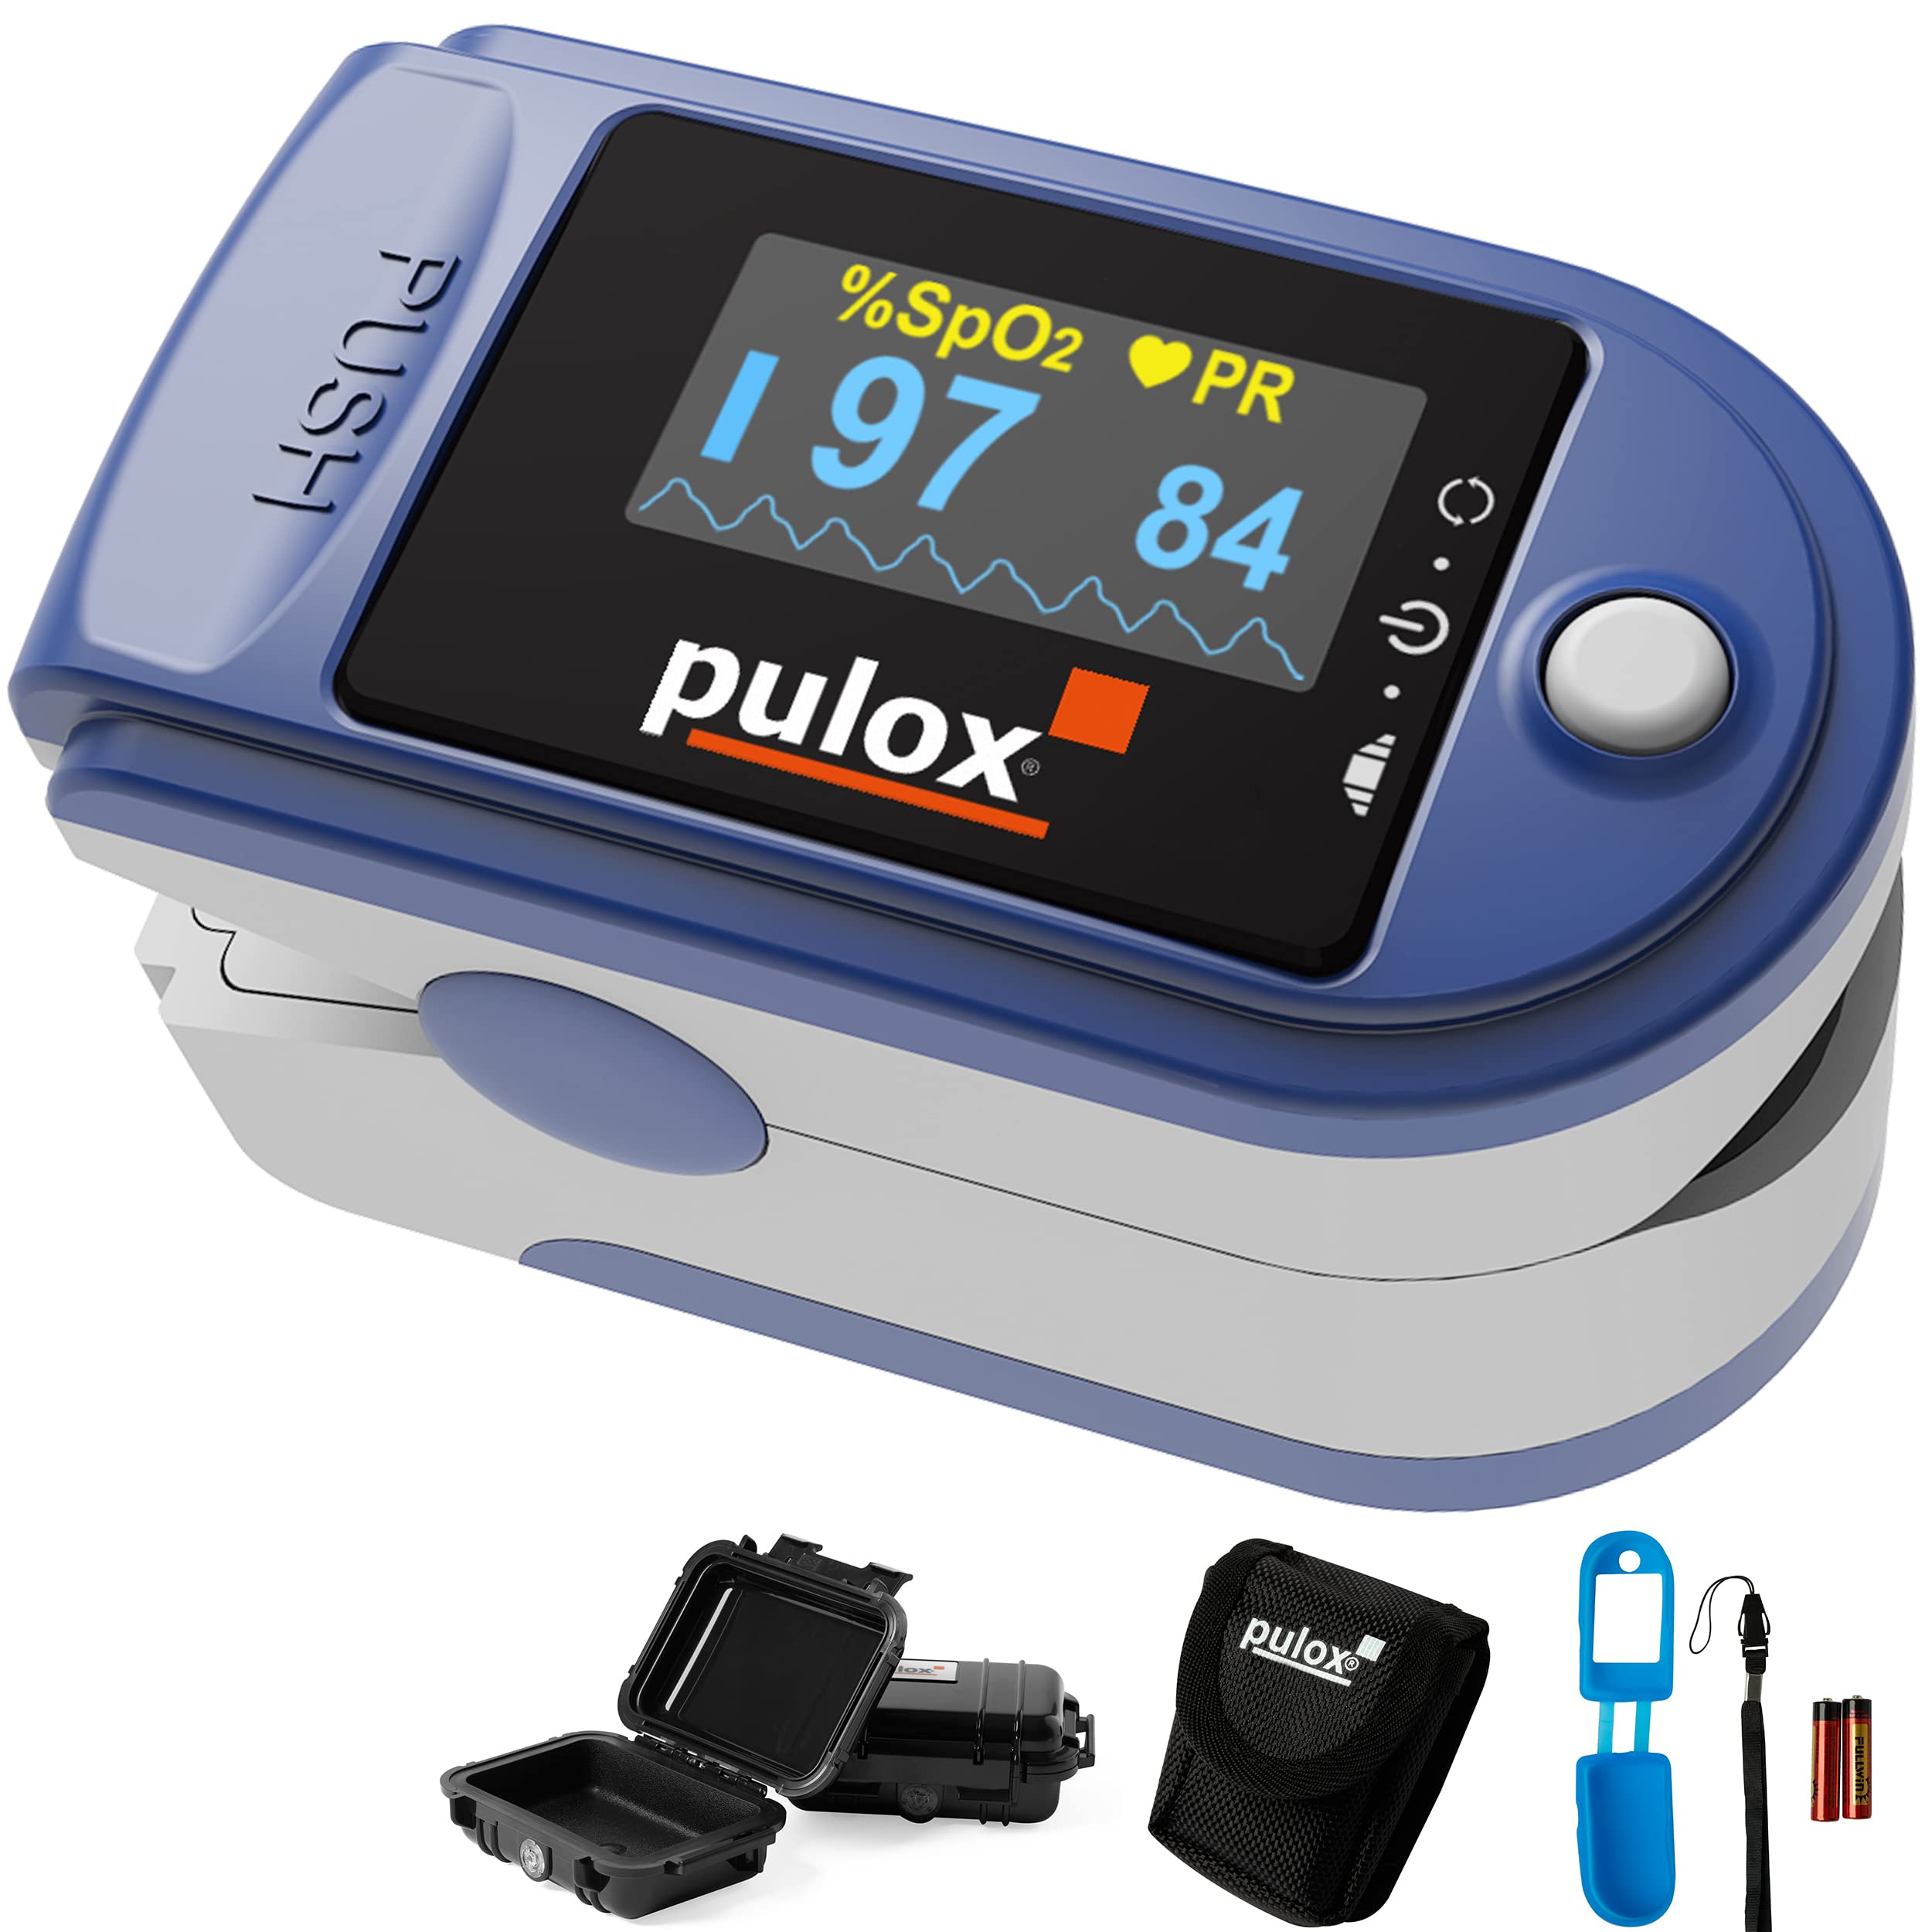 Pulsoximeter Pulox PO-200 Set zur Messung von Puls und Sauerstoffsättigung am Finger inkl. Hardcase, Silikonschutzhülle, Batterien und Trageband in Dunkelblau Oximeter mit drehbarem LCD Display